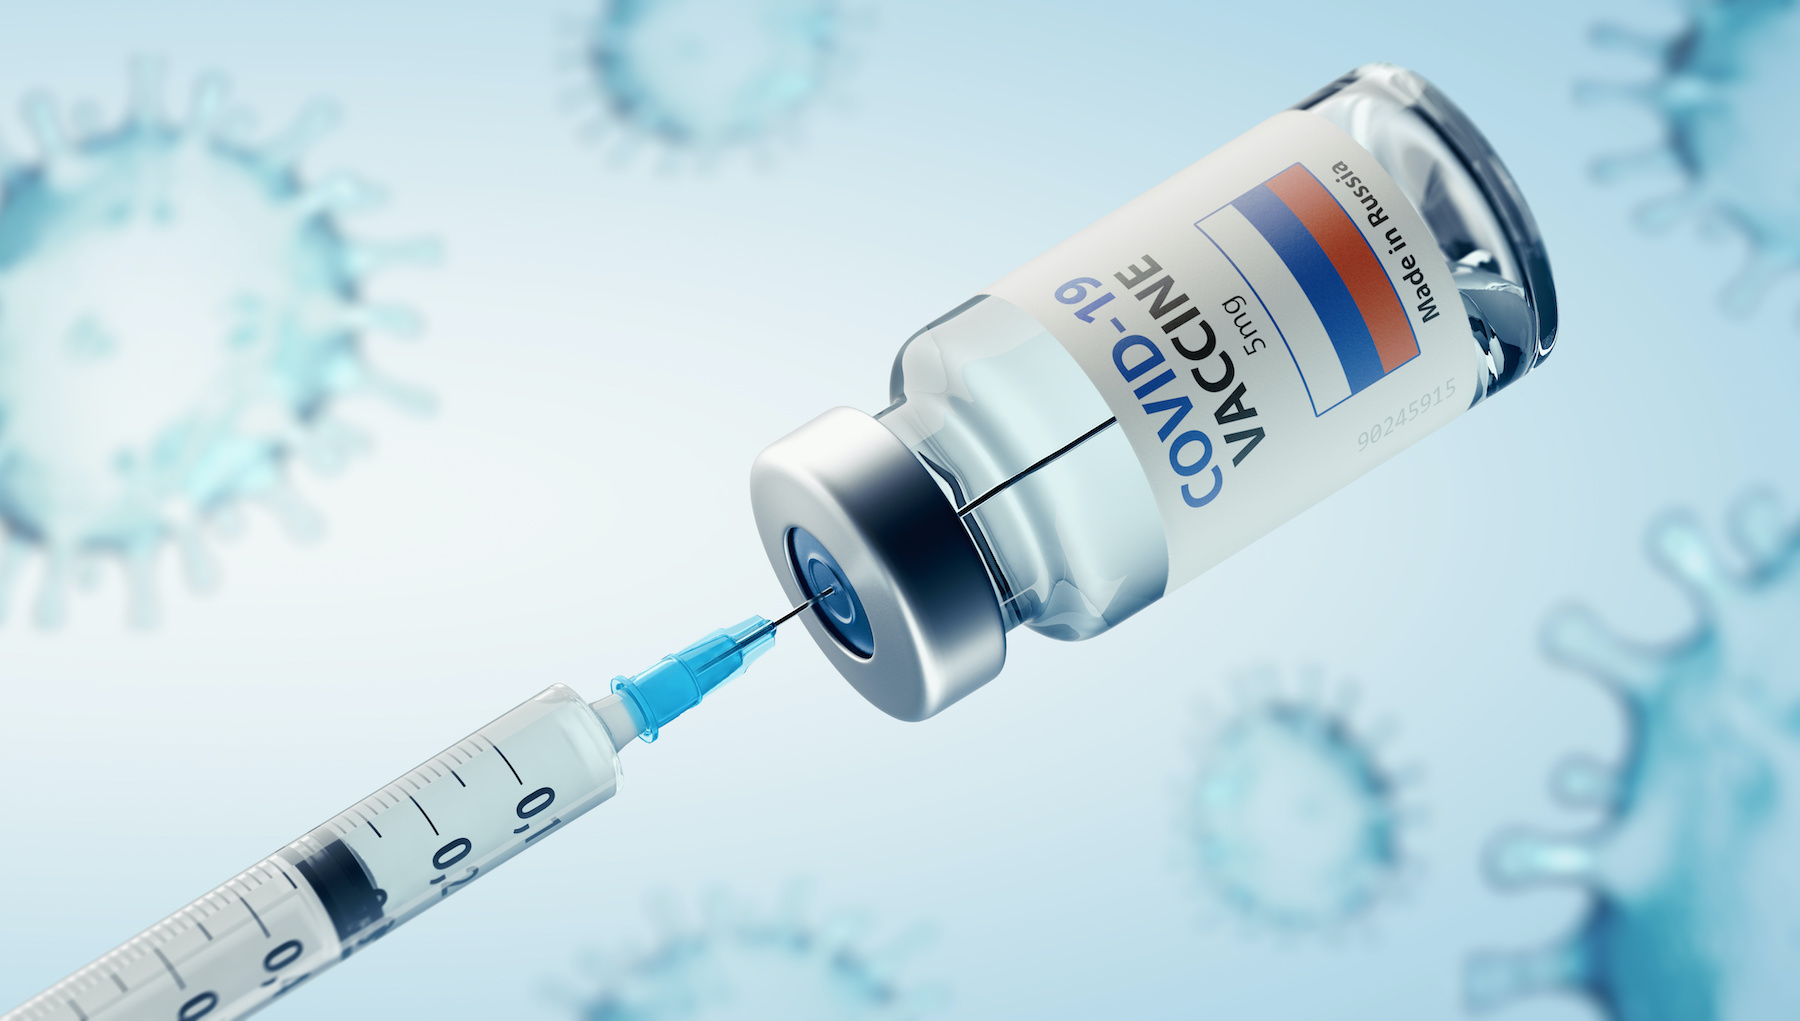 Après le vaccin de Pfizer et Sputnik V du gouvernement russe, mRNA-1273 est le troisième vaccin a annoncé son efficacité en une semaine. © Feydzhet Shabanov, Adobe Stock